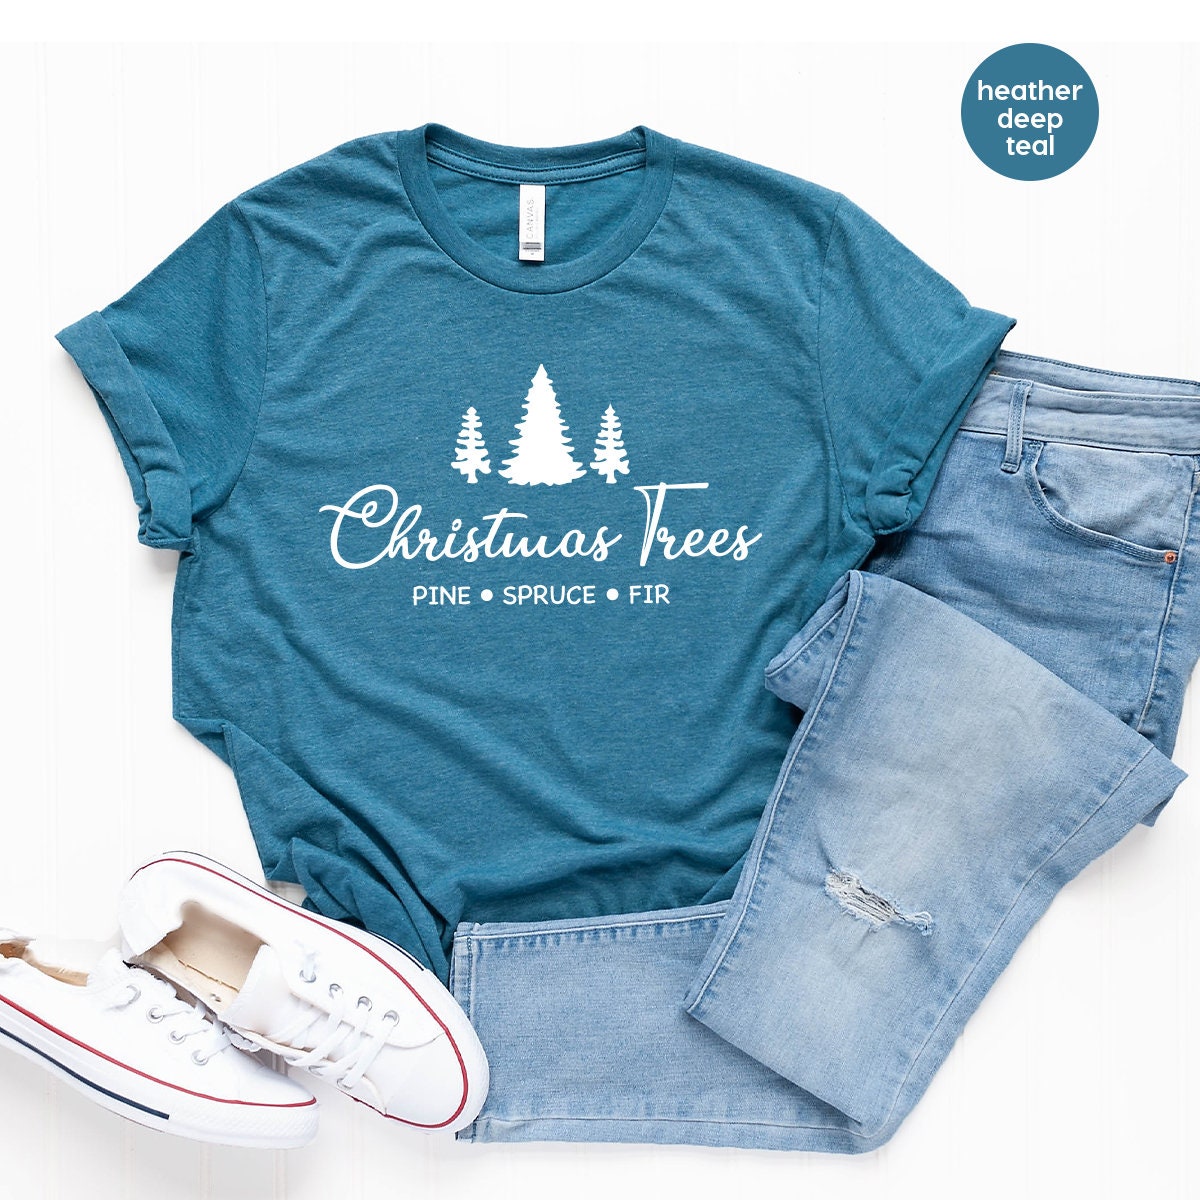 Christmas T Shirt, Christmas Tree Tee, Pine Spruce Fir Shirt, Christmas Vacation Shirt, Christmas Gift, Holiday Shirt, Women's Christmas Tee - Fastdeliverytees.com